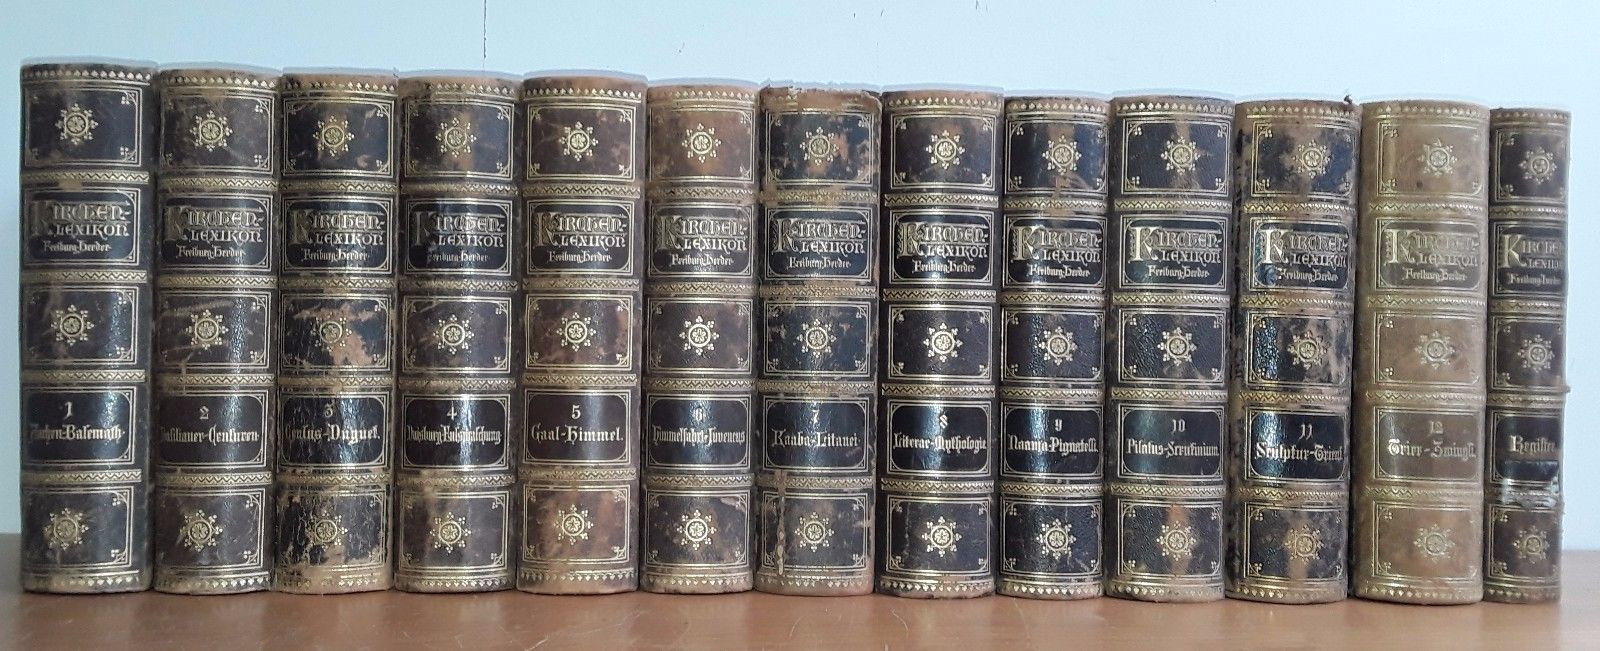 Wetzer und Welte's Kirchenlexikon Band 1-12 + Reg. (13 Bände komplett) 2. Aufl.